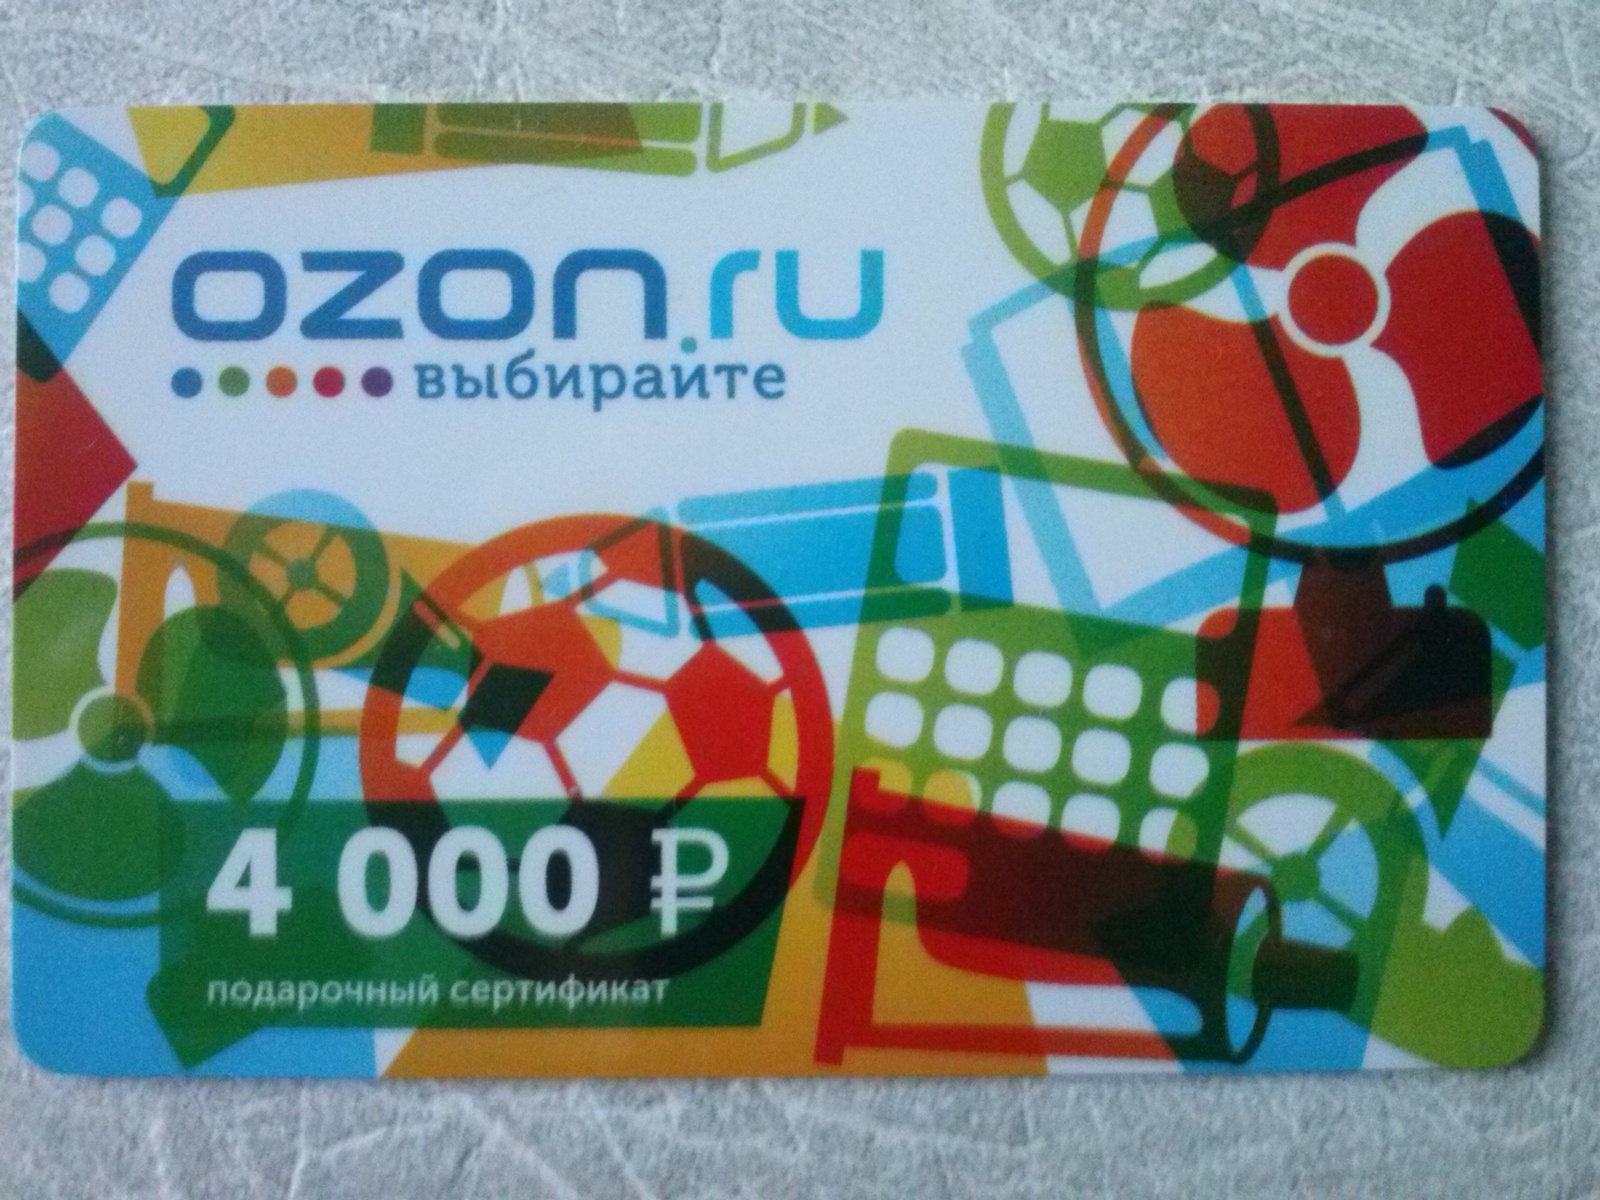 Заказать озон карту с бесплатной доставкой пластиковую. Подарочная карта OZON. Подарочный сертификат Озон. Сертификат Озон. OZON карта.